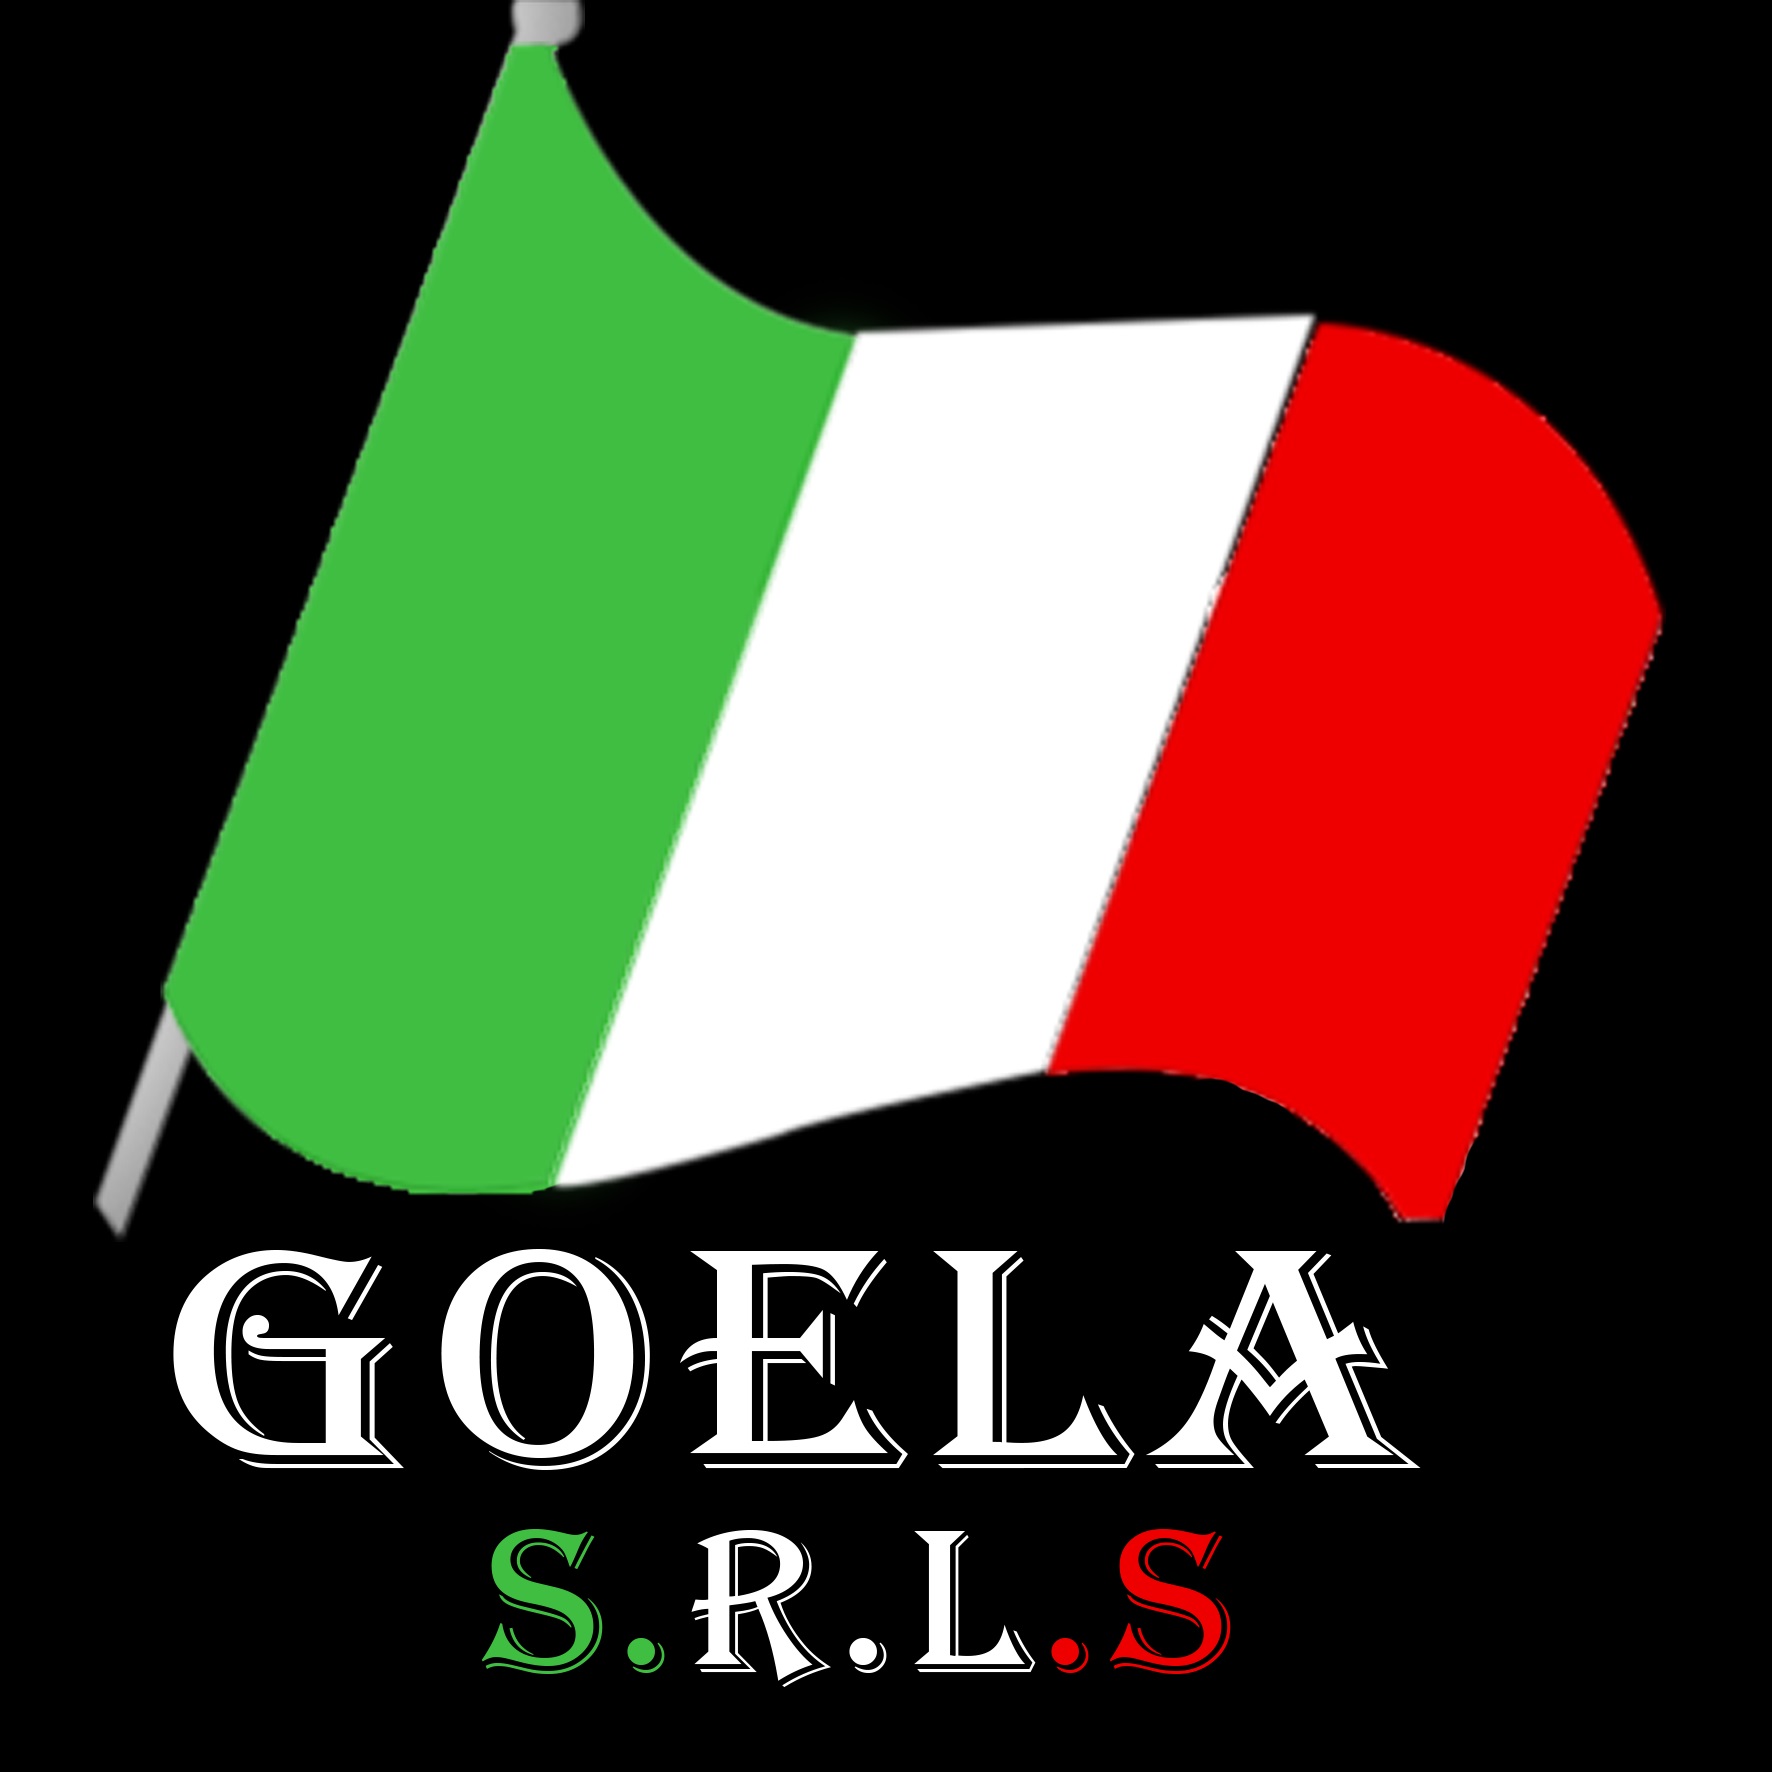 Goela SRL